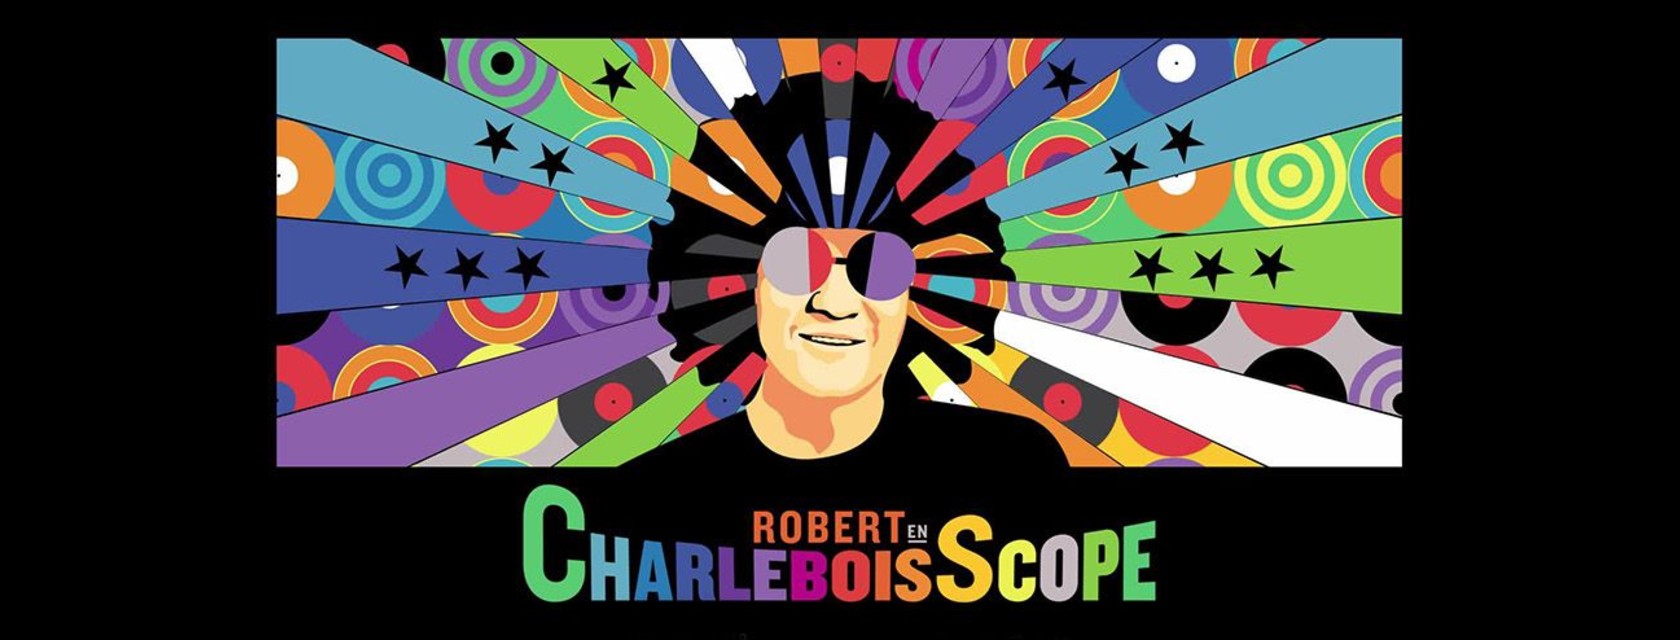 Robert Charlebois : Robert en CharleboisScope reporté en 2021